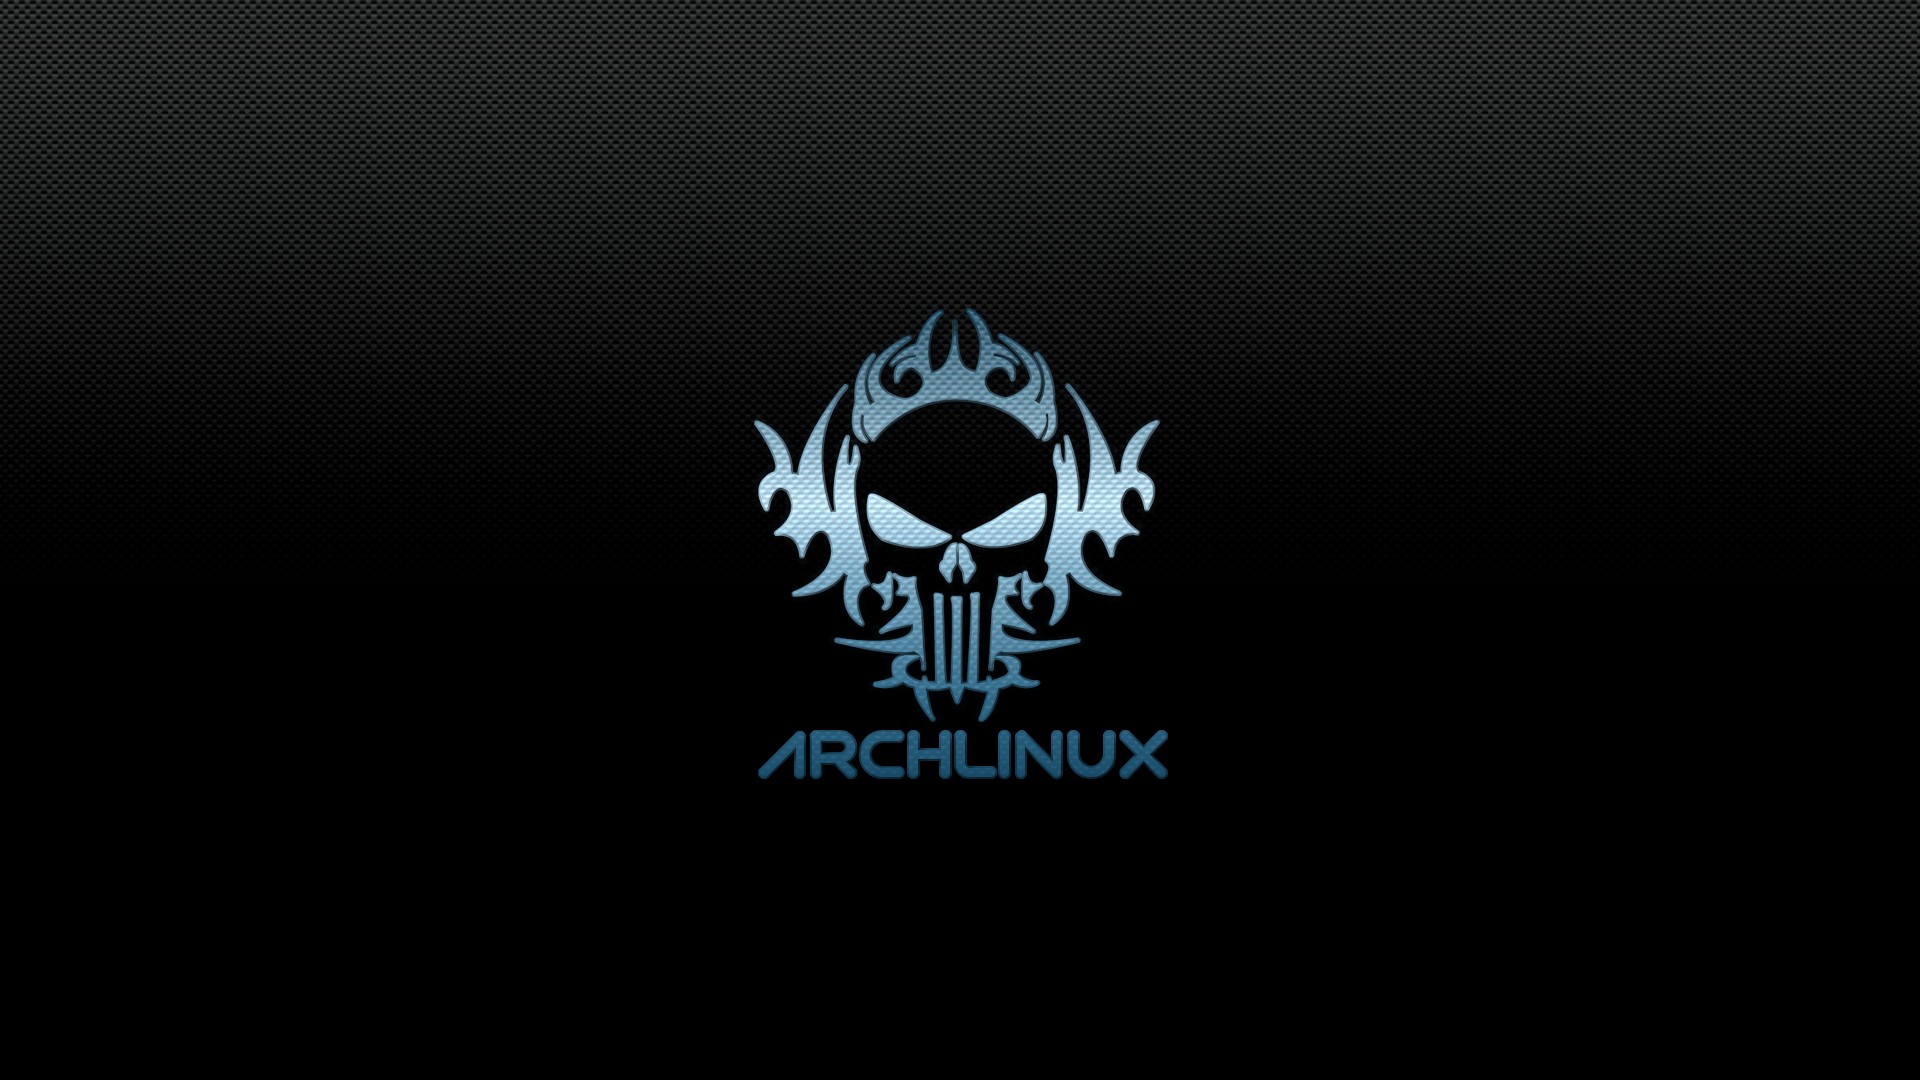 arch linux wallpaper hd,logo,text,font,emblem,graphics